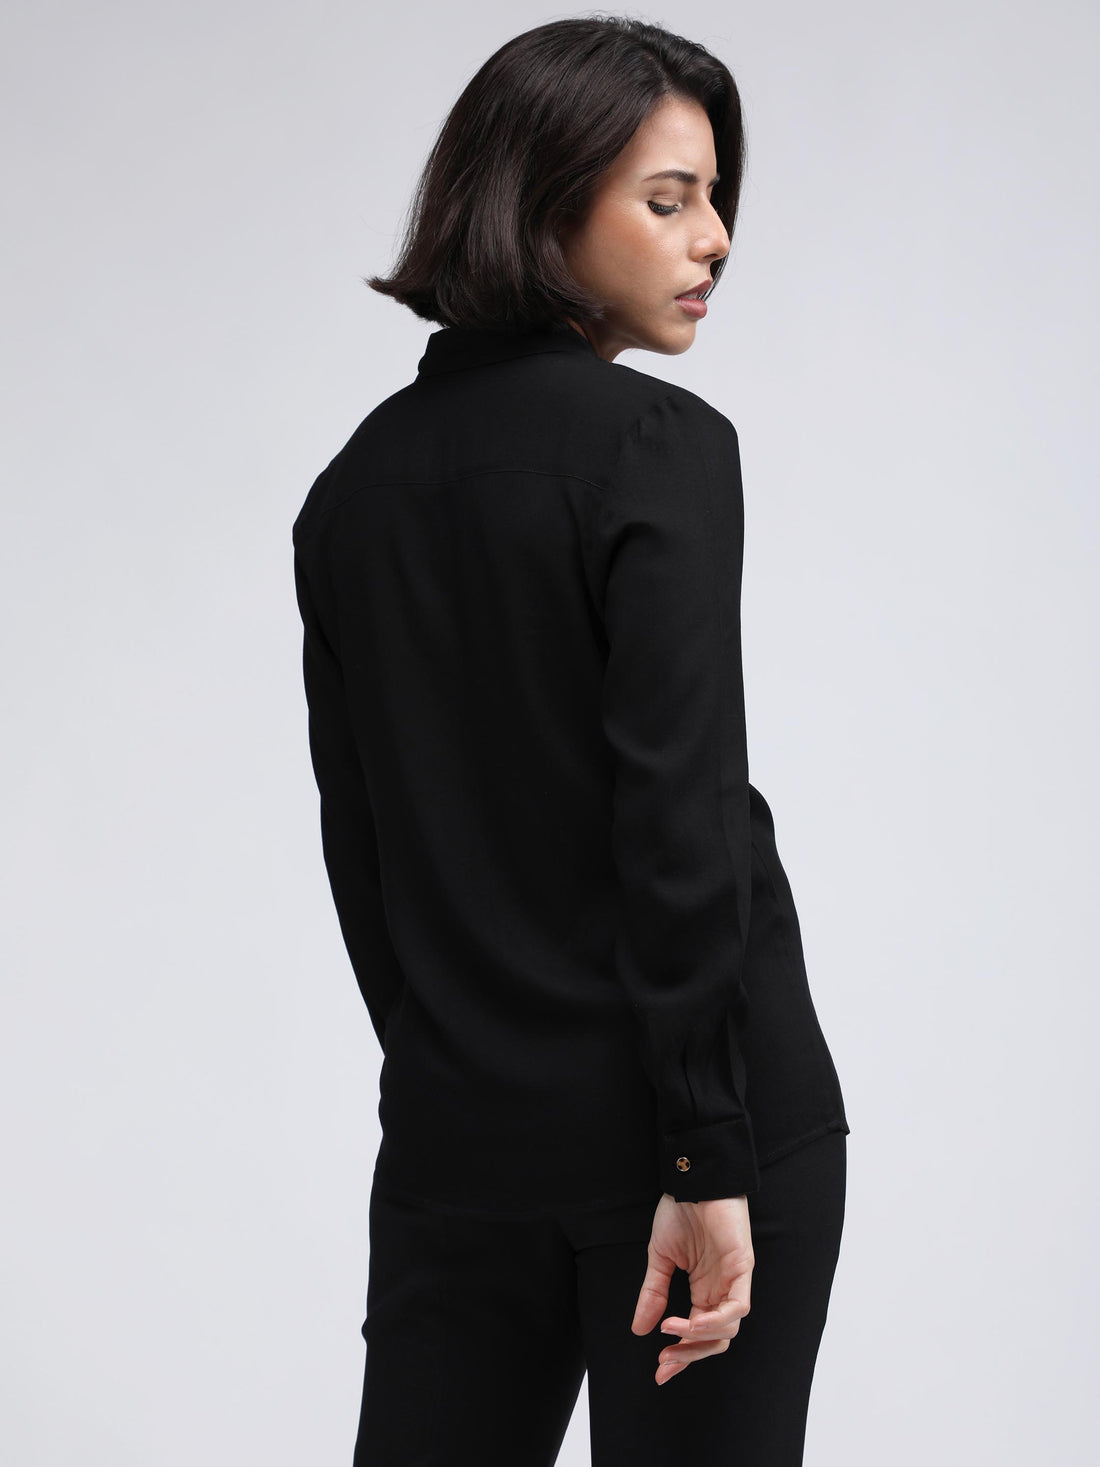 Black suit shirt